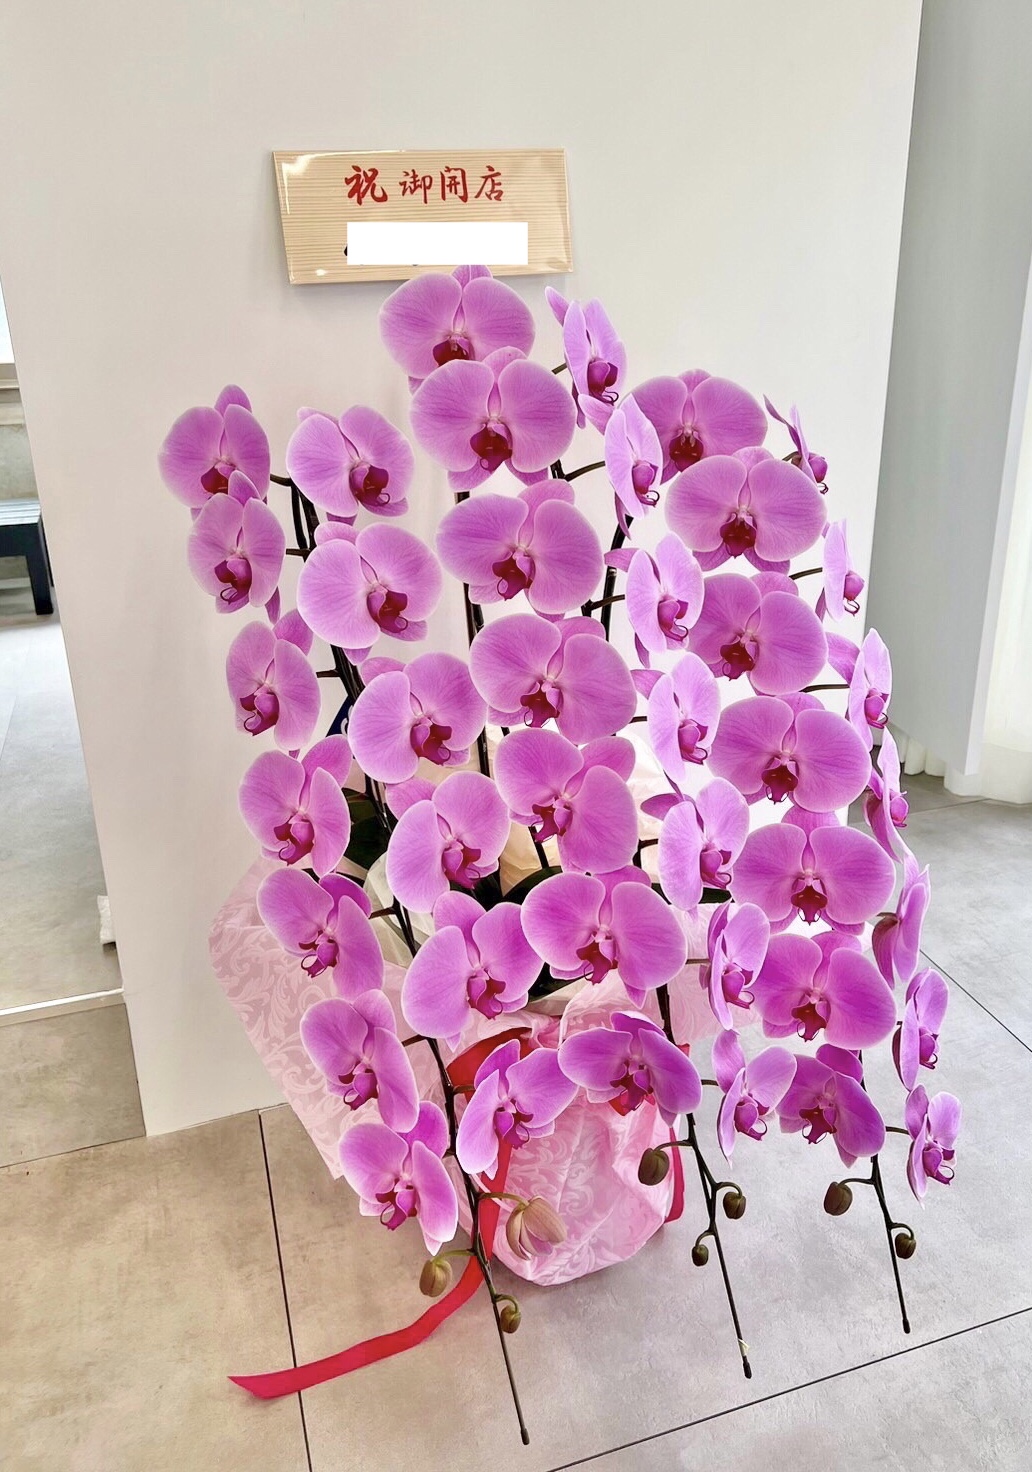 【美容室の開店祝い】 華やかなピンク色の胡蝶蘭